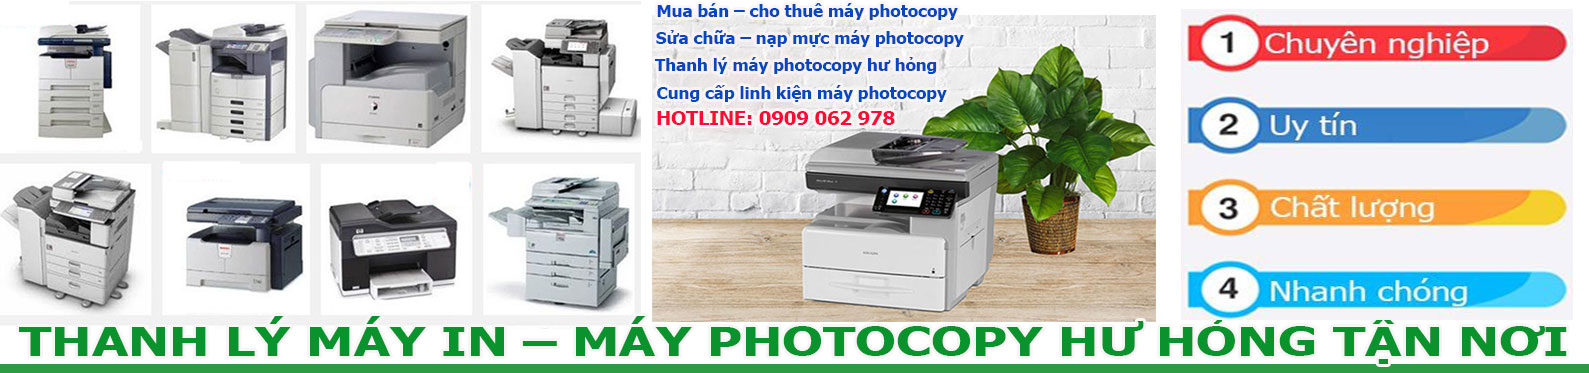 Thanh lý máy photocopy giá cao tphcm